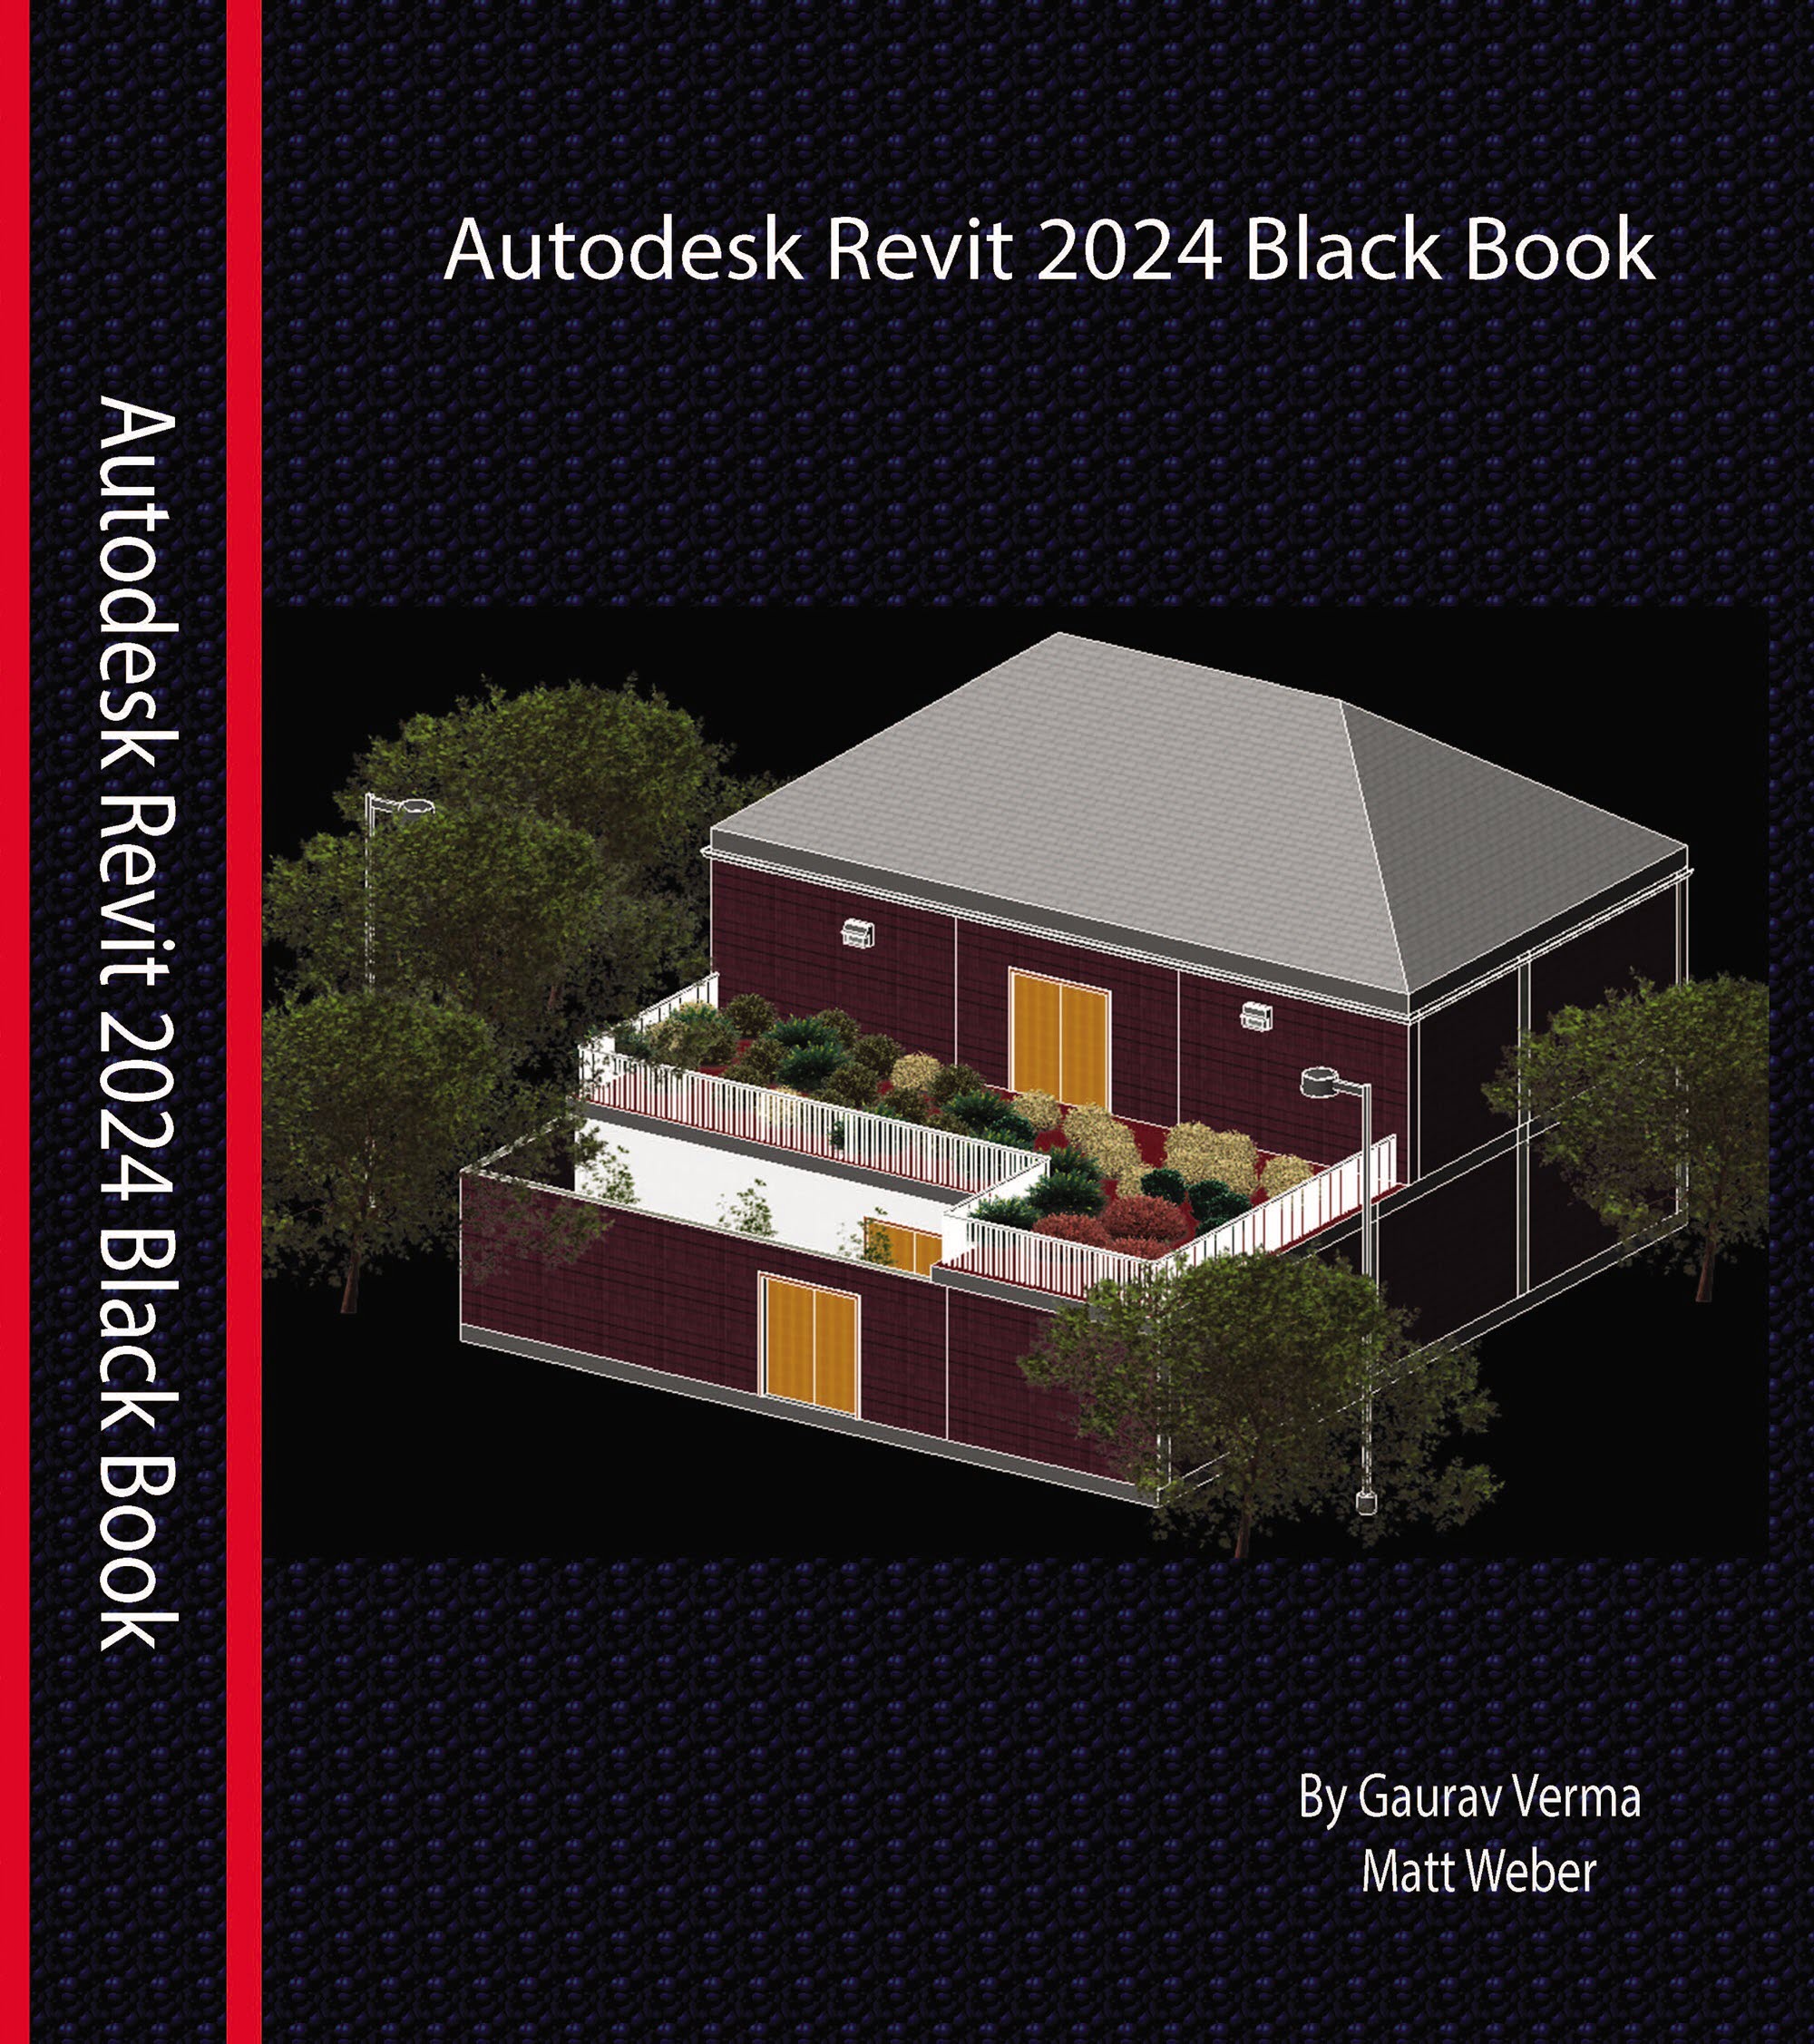 Autodesk Revit 2024 Black Book CADCAMCAE Works